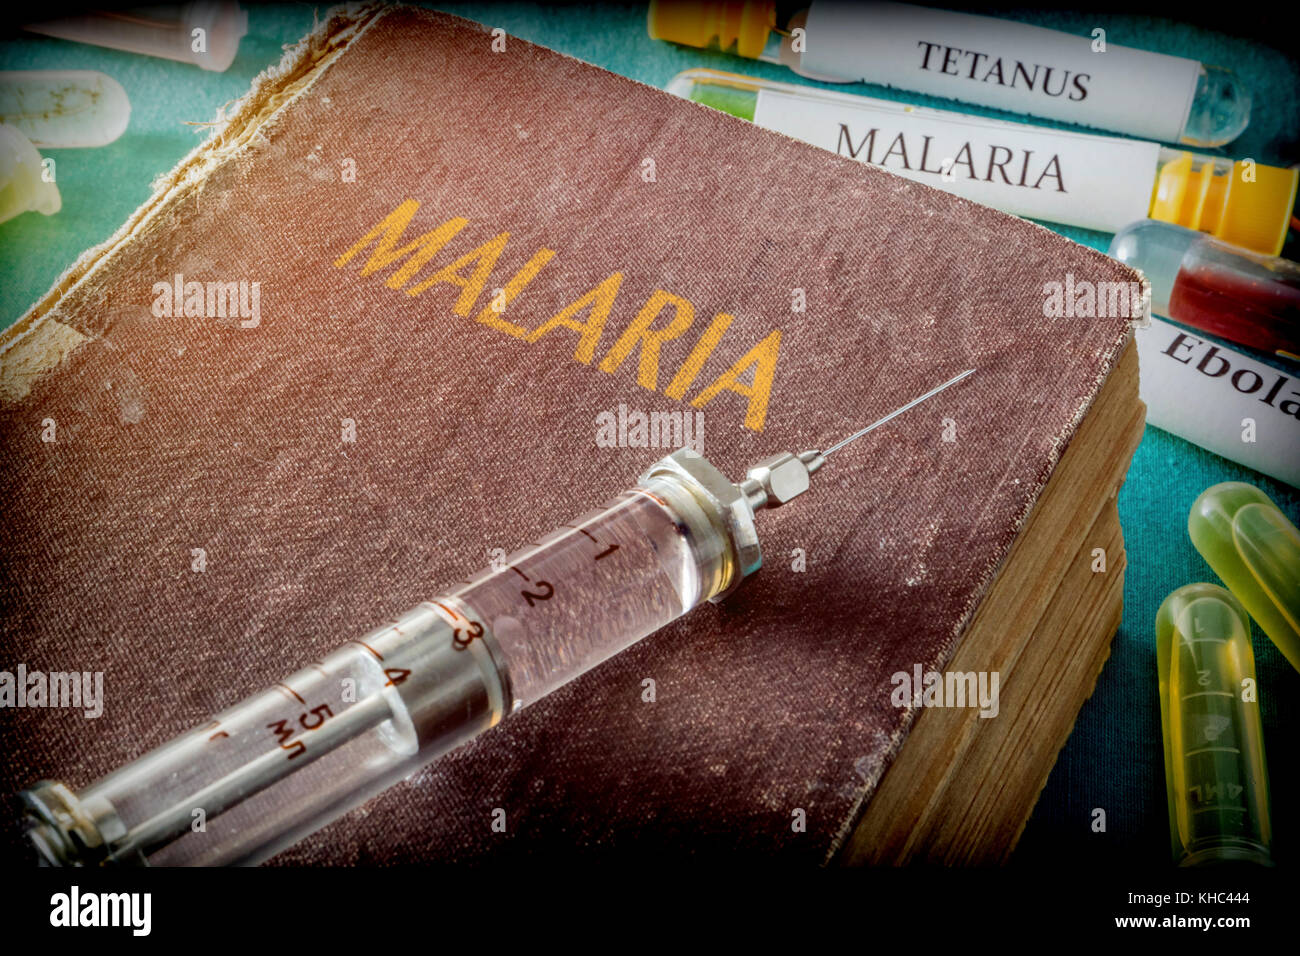 Seringue vintage sur un livre de paludisme, concept médical Banque D'Images